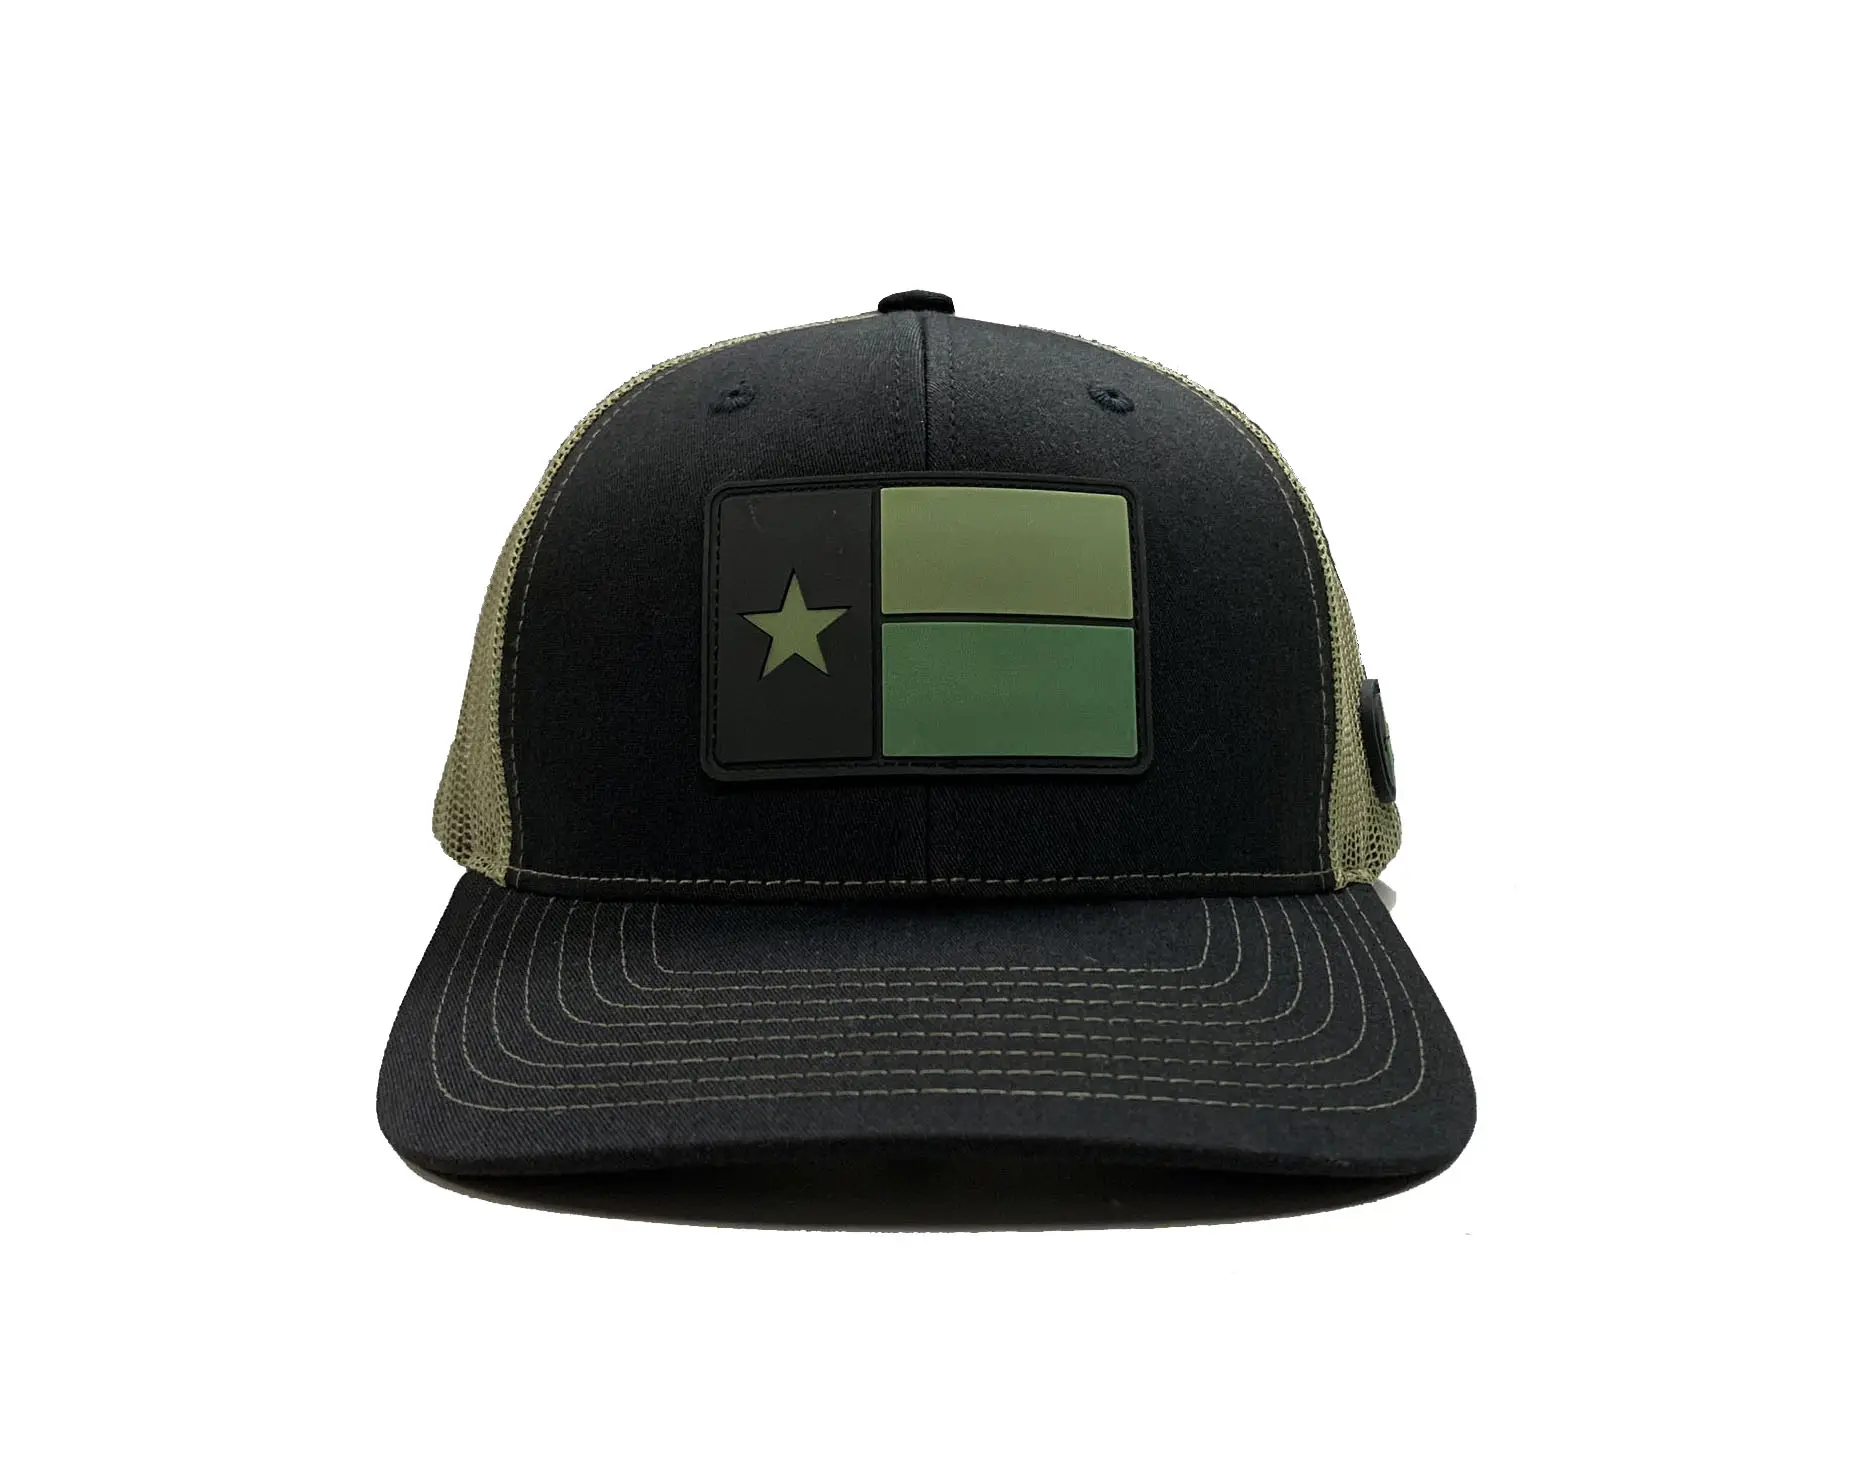 قبعة رichardson 112 عالية الجودة باللونين الأسود/الأخضر للرجال بشعار مخصص قبعة من البلاستيك بنسبة 65% قطن و35% بوليستر